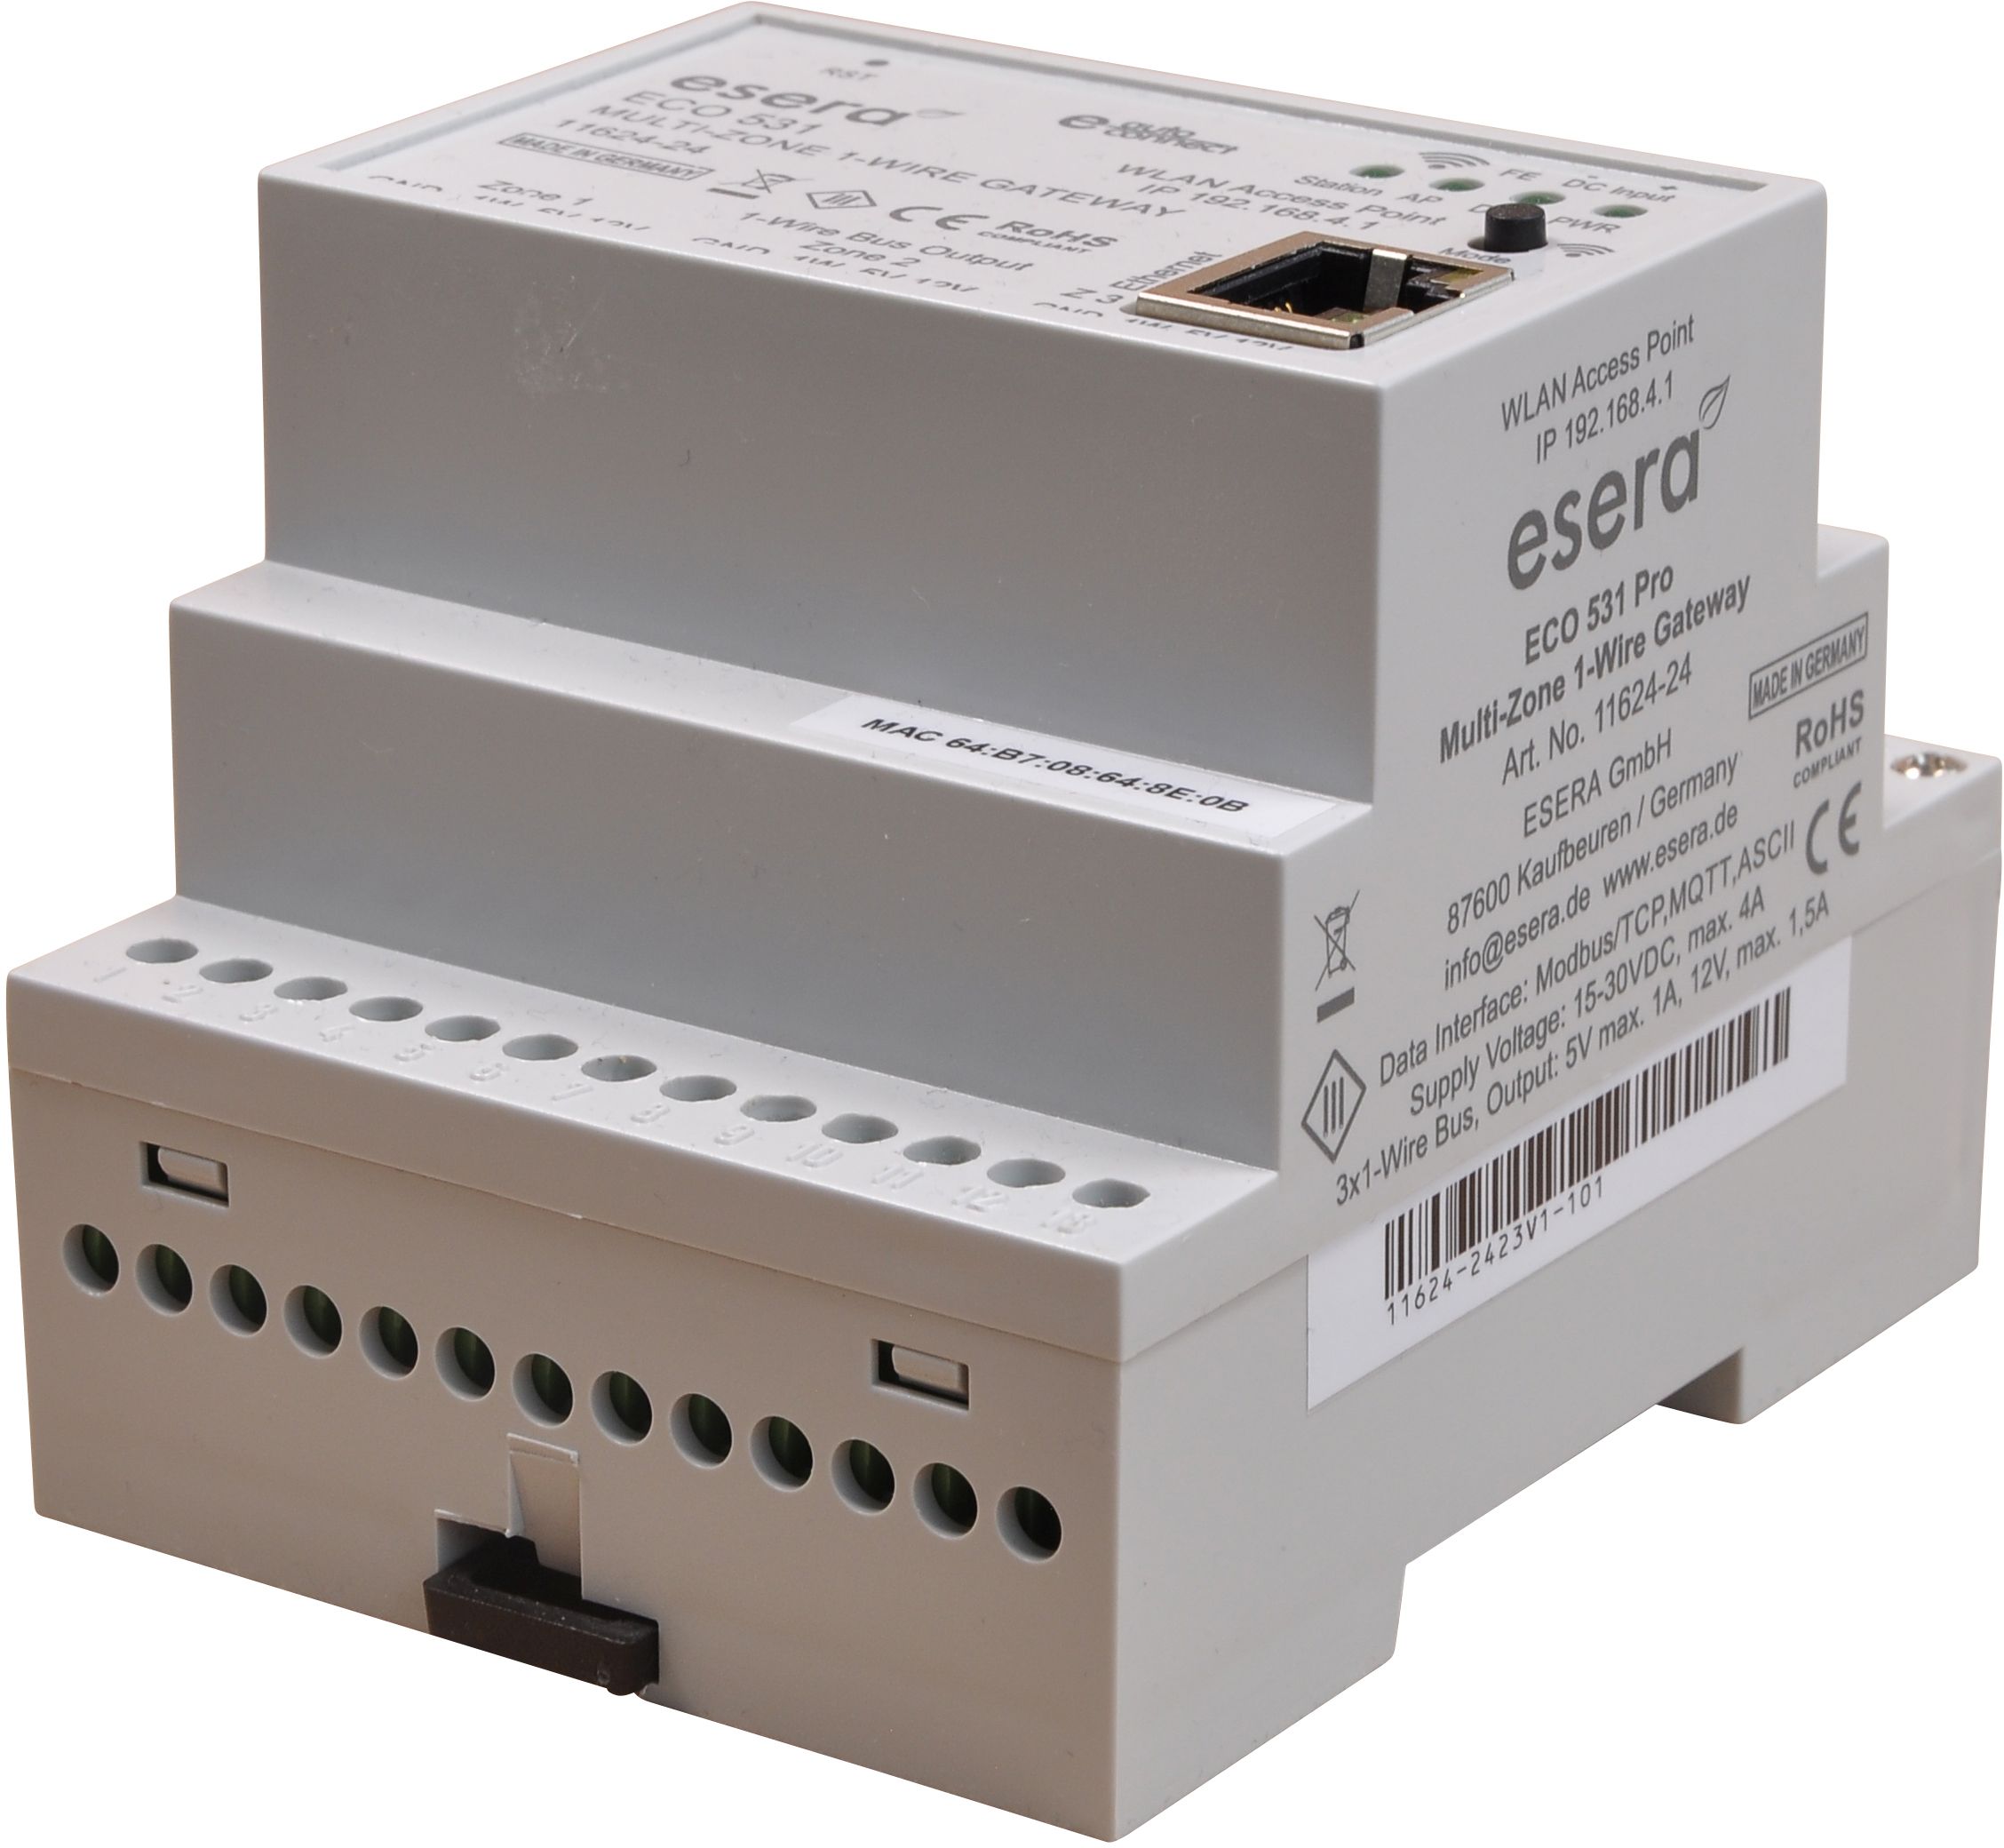 ECO 531 Zentraleinheit Industrial Multizone 1-Wire Sensor-Actor-Gateway